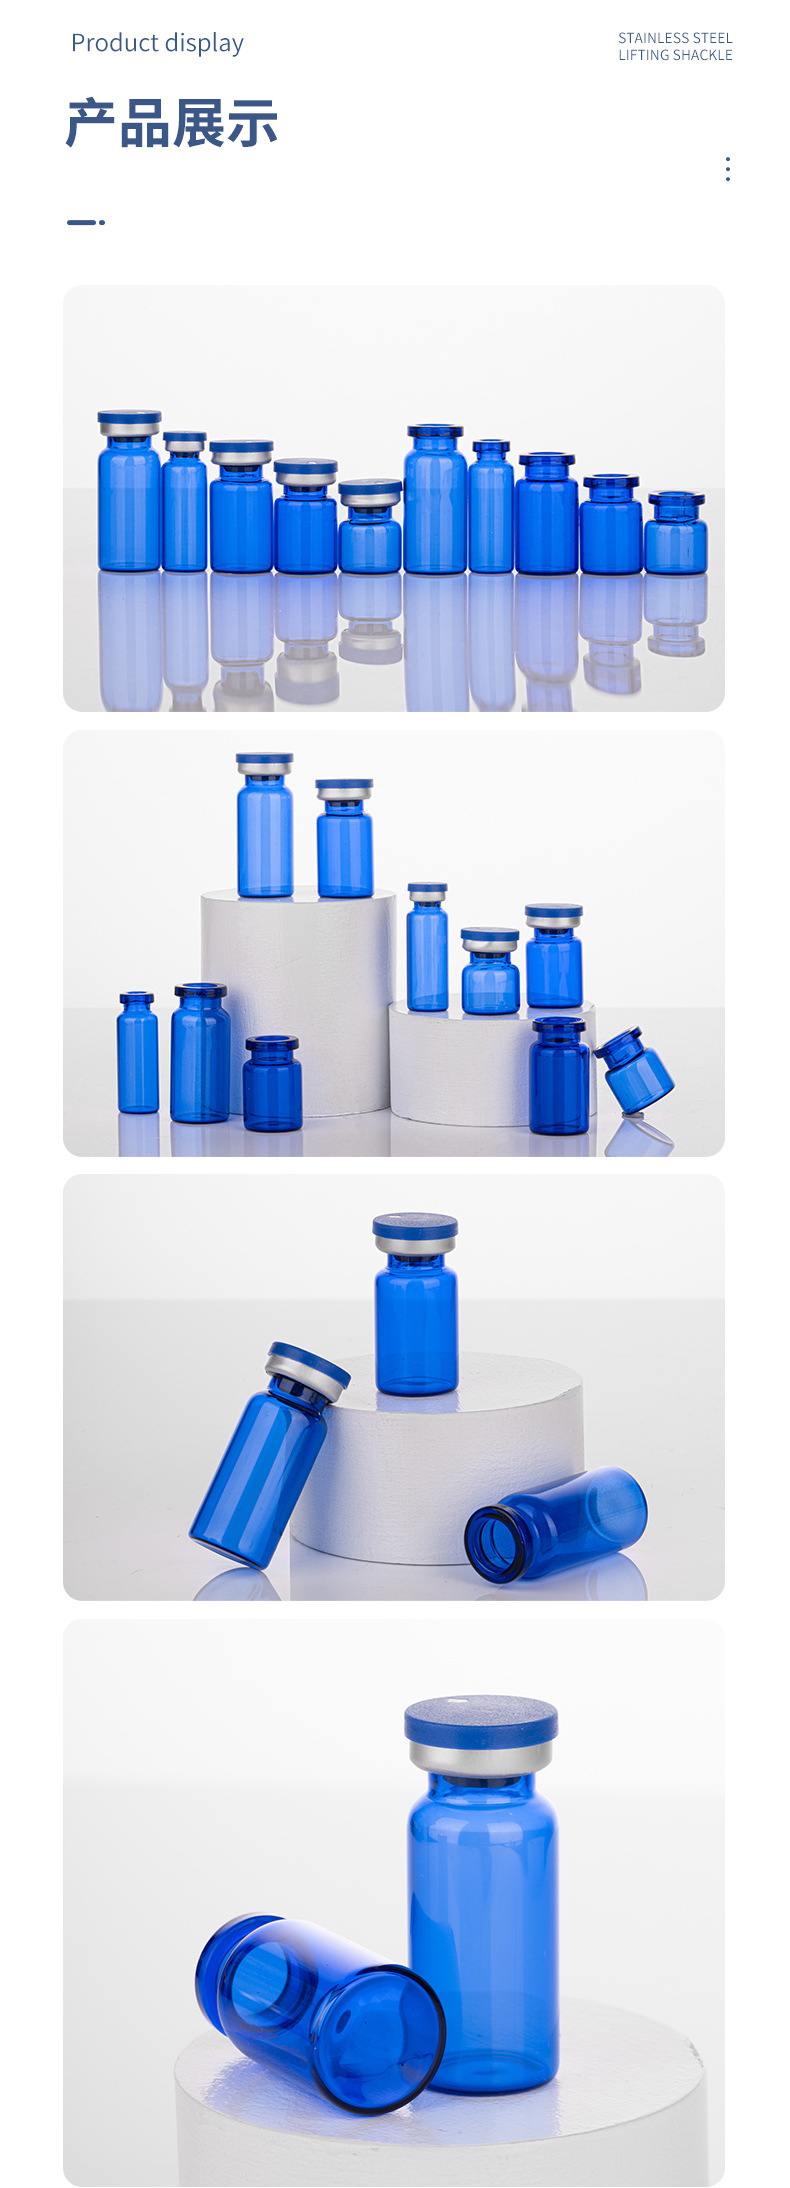 蓝色管制瓶，蓝色拉管瓶，蓝色西林瓶，蓝色冻干粉瓶，钴蓝色精华液瓶，药用玻璃瓶，丹阳市云阳镇恩承玻璃加工厂